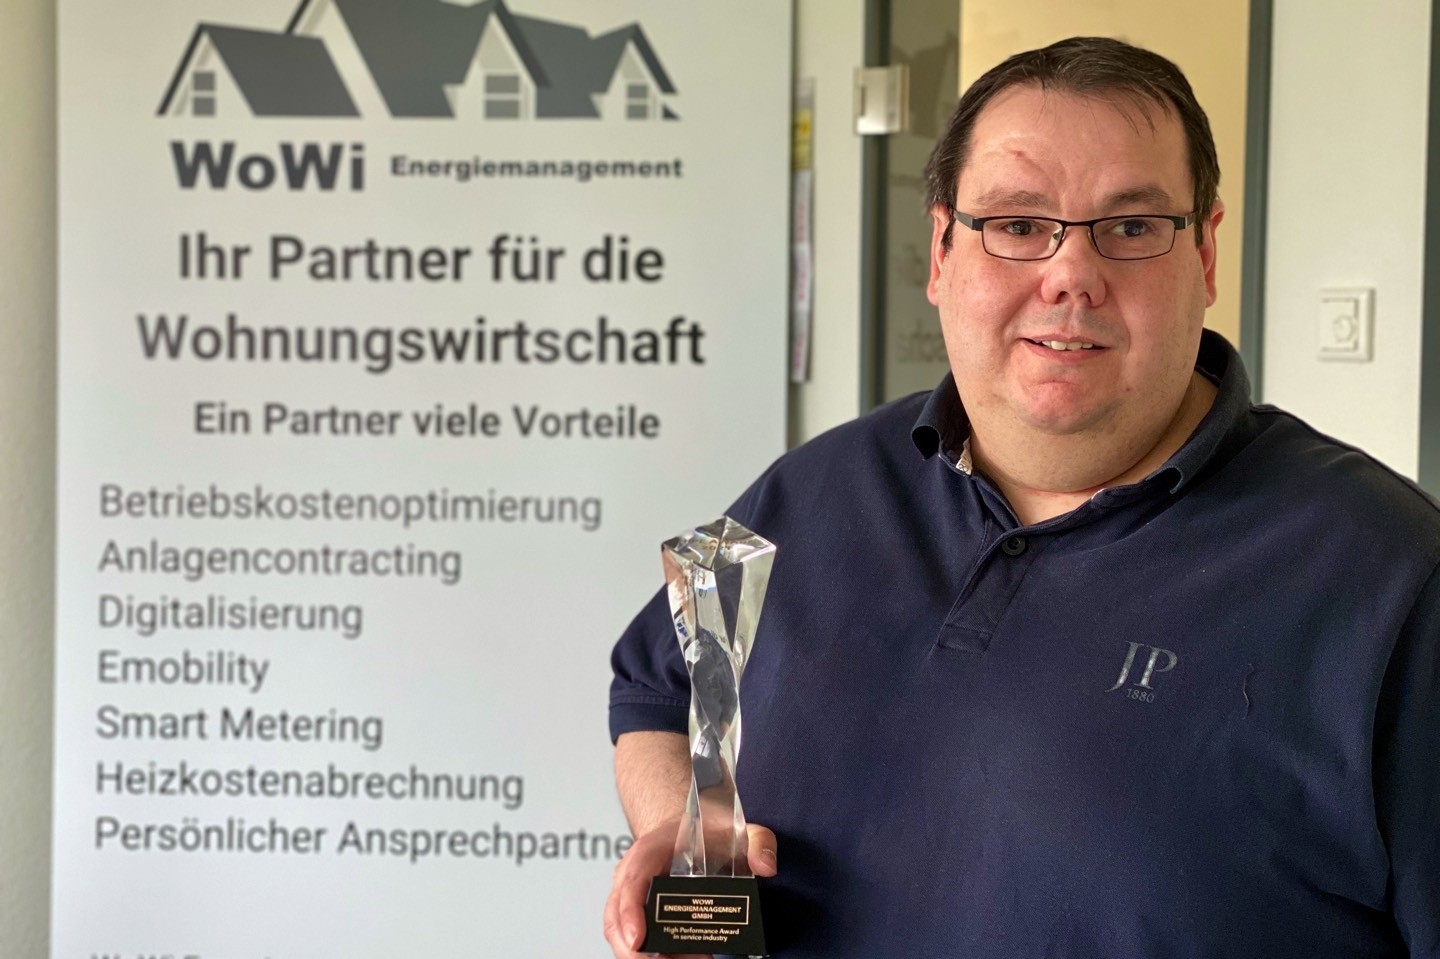 WoWi Energiemanagement GmbH,Marco Liebing,Warendorf,High Performance Award,Dienstleistung,Energiebeschaffung,